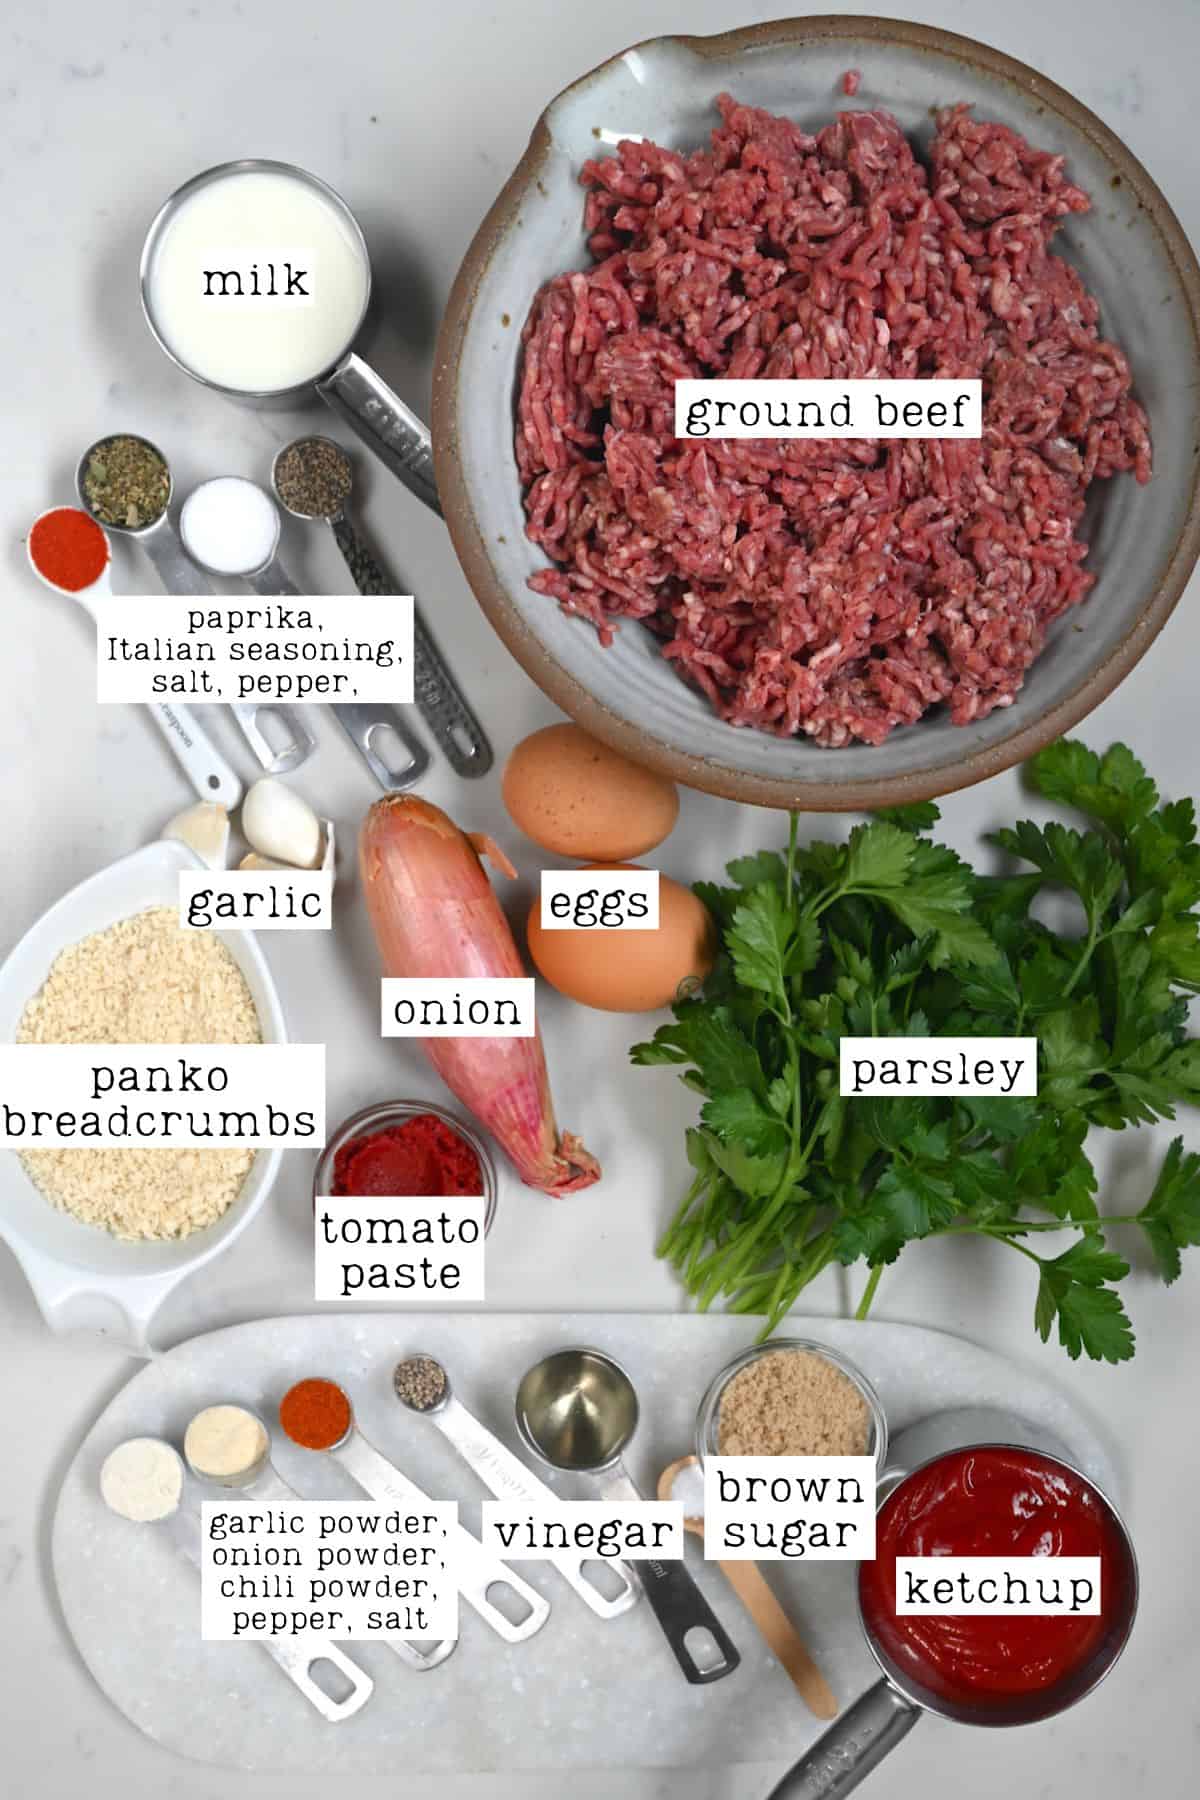 Ingredients for meatloaf and meatloaf glaze